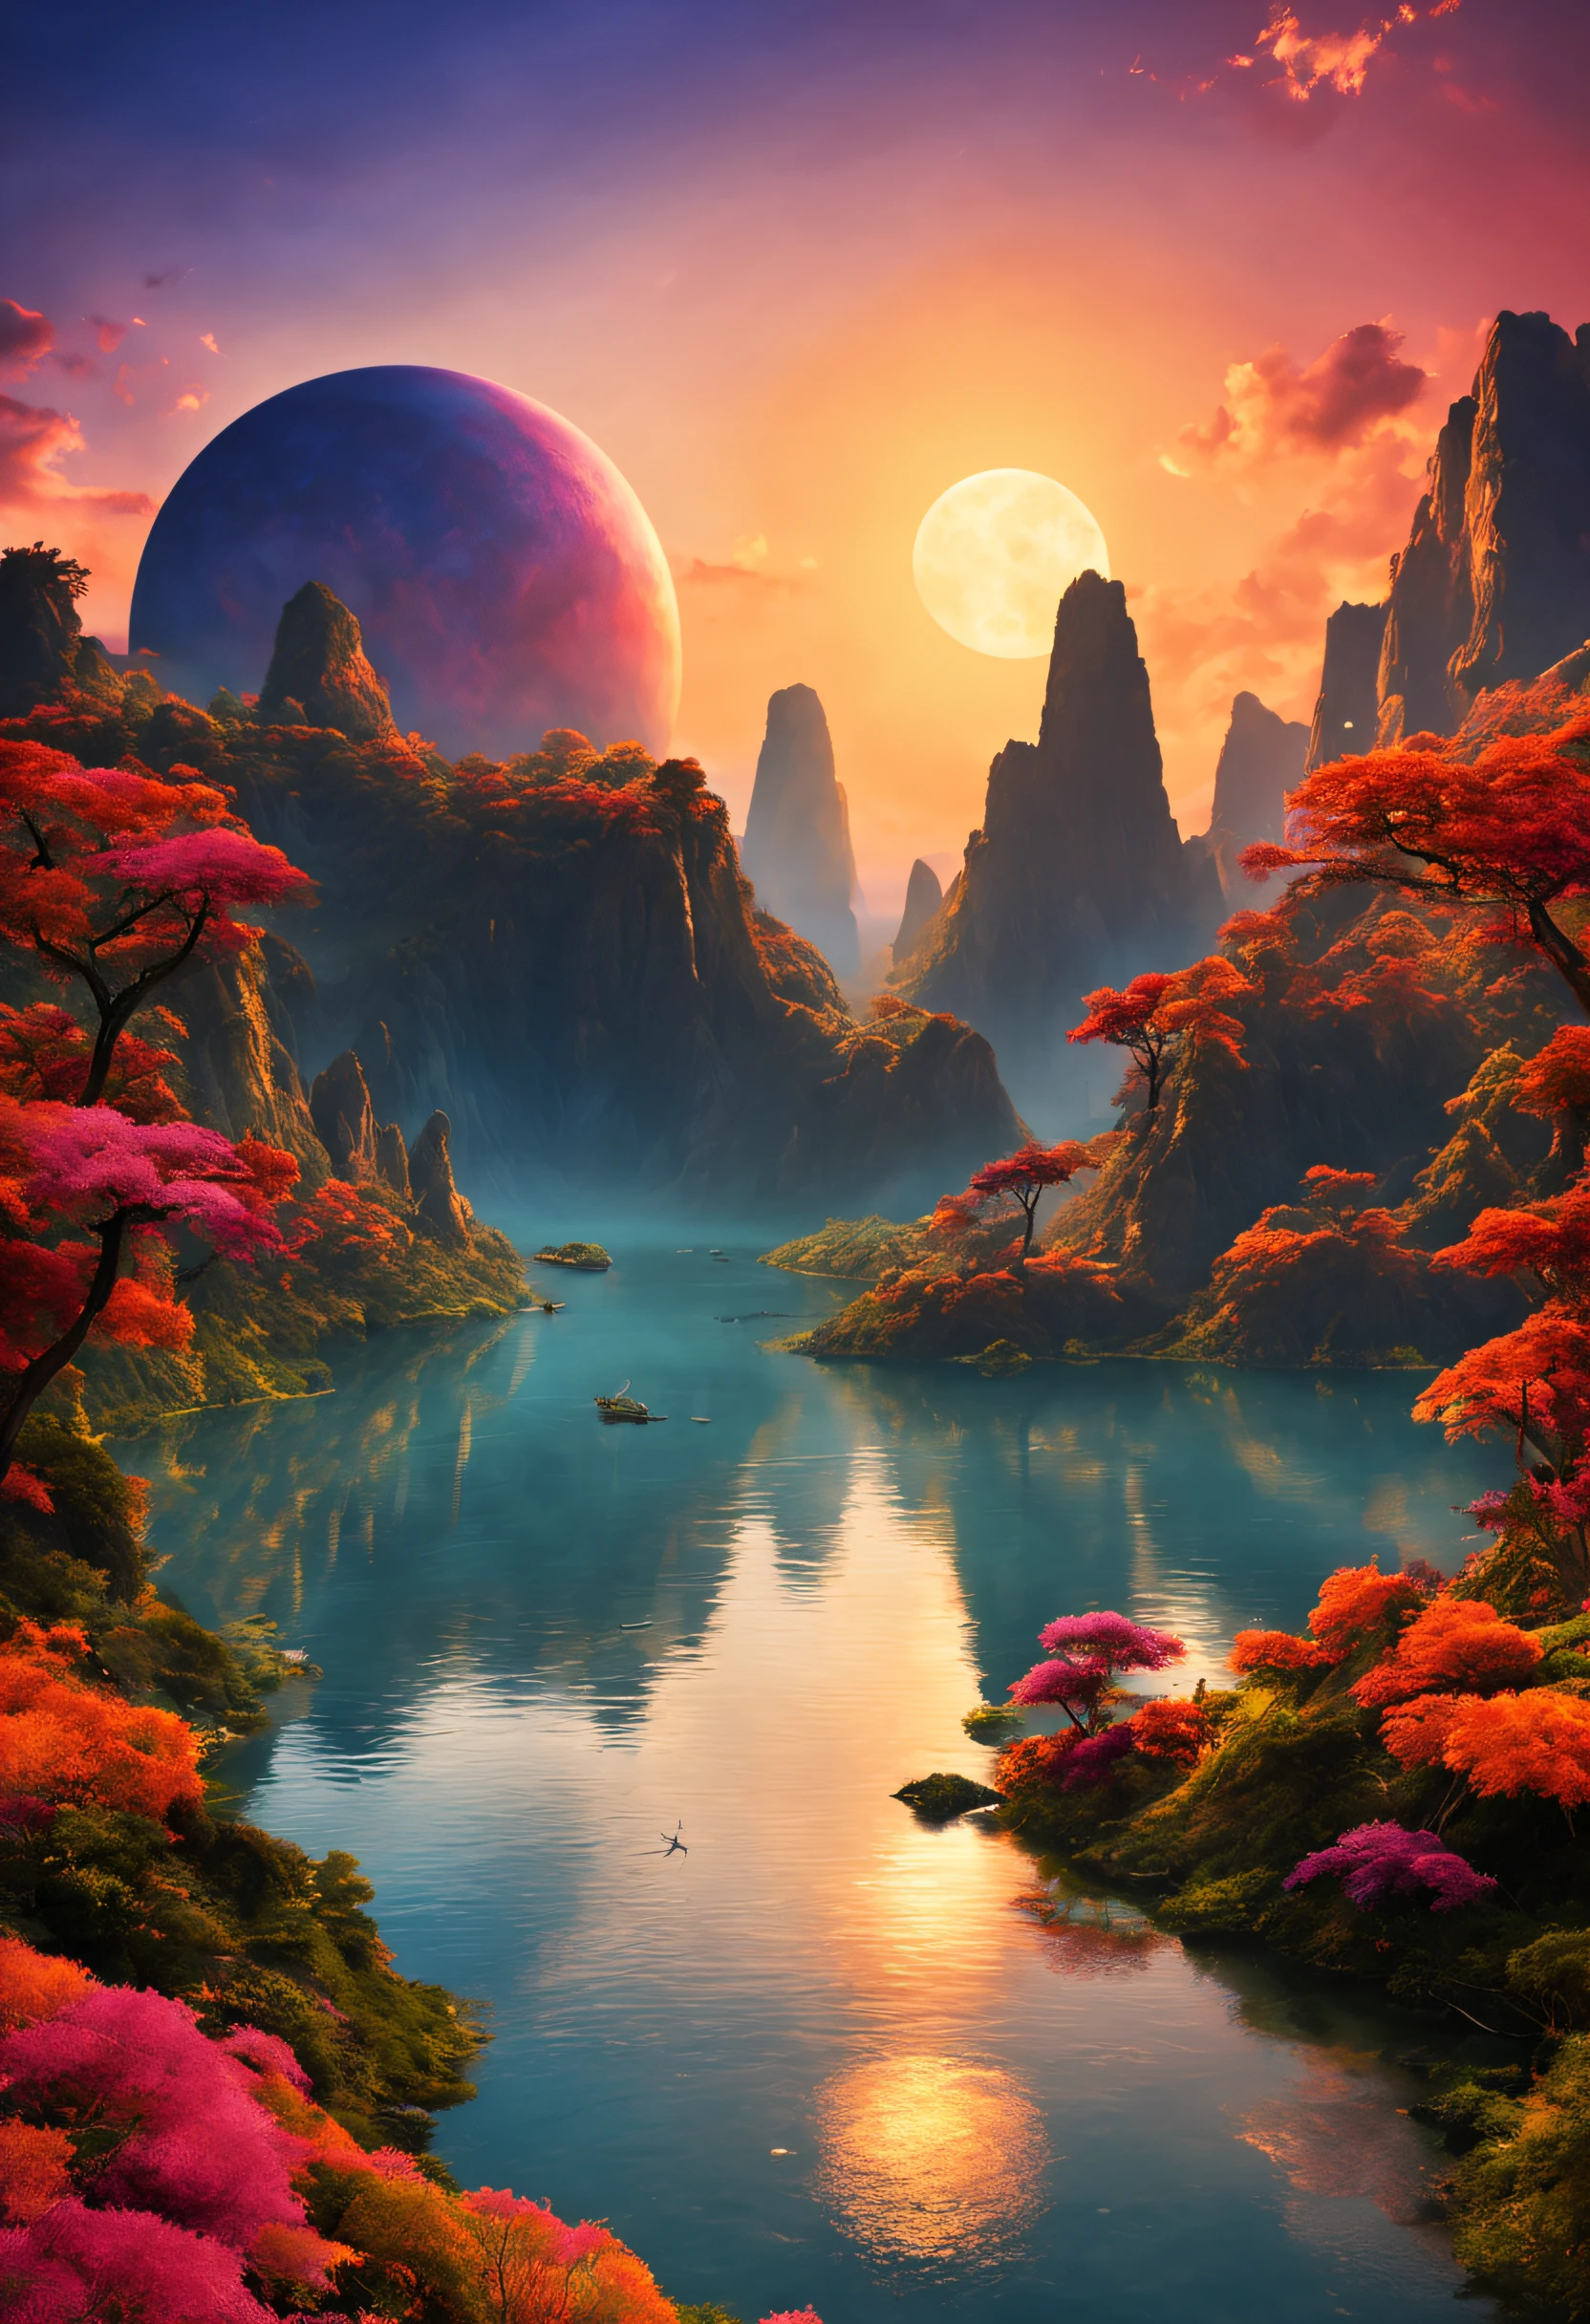 Un magnifique paysage imaginaire magnifique sur une planète exotique avec beaucoup de couchers de soleil colorés et un paysage extraordinaire.